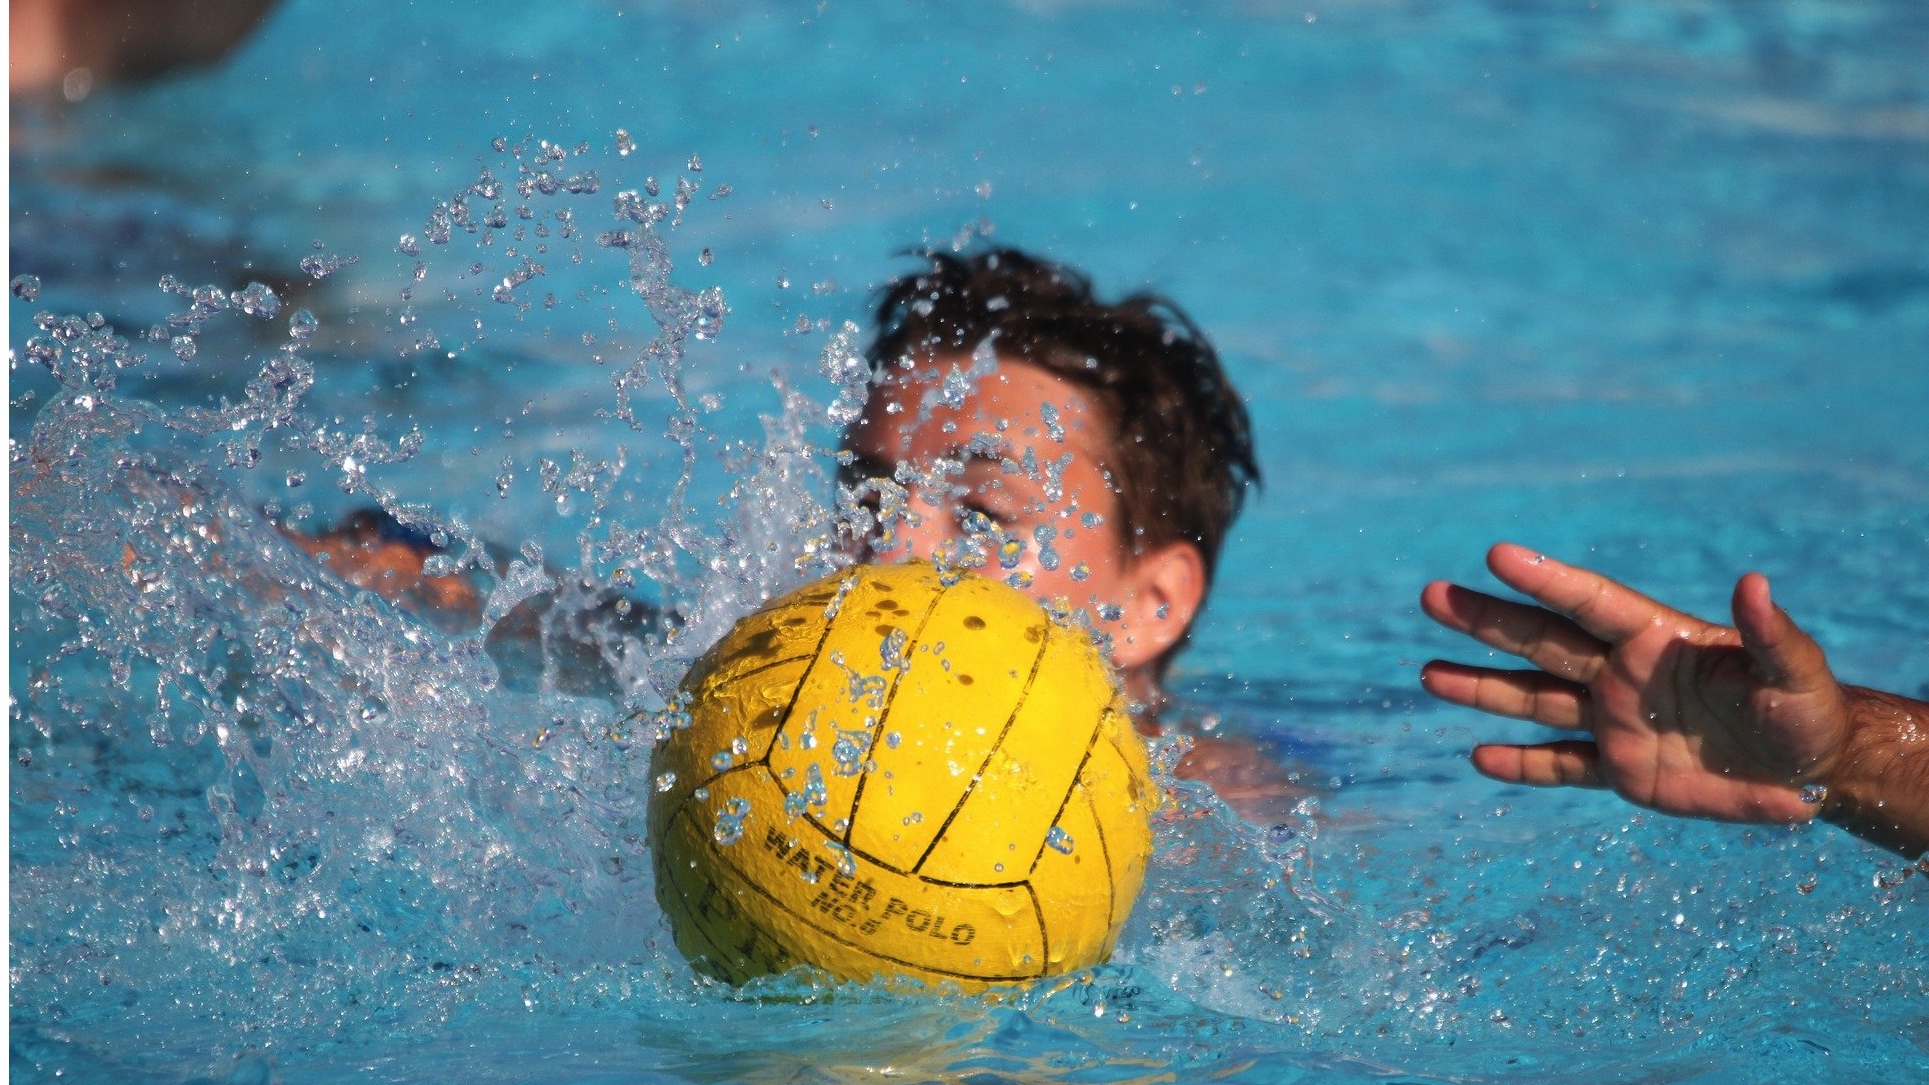 Water-polo : les compétitions suspendues jusqu’au 31 décembre